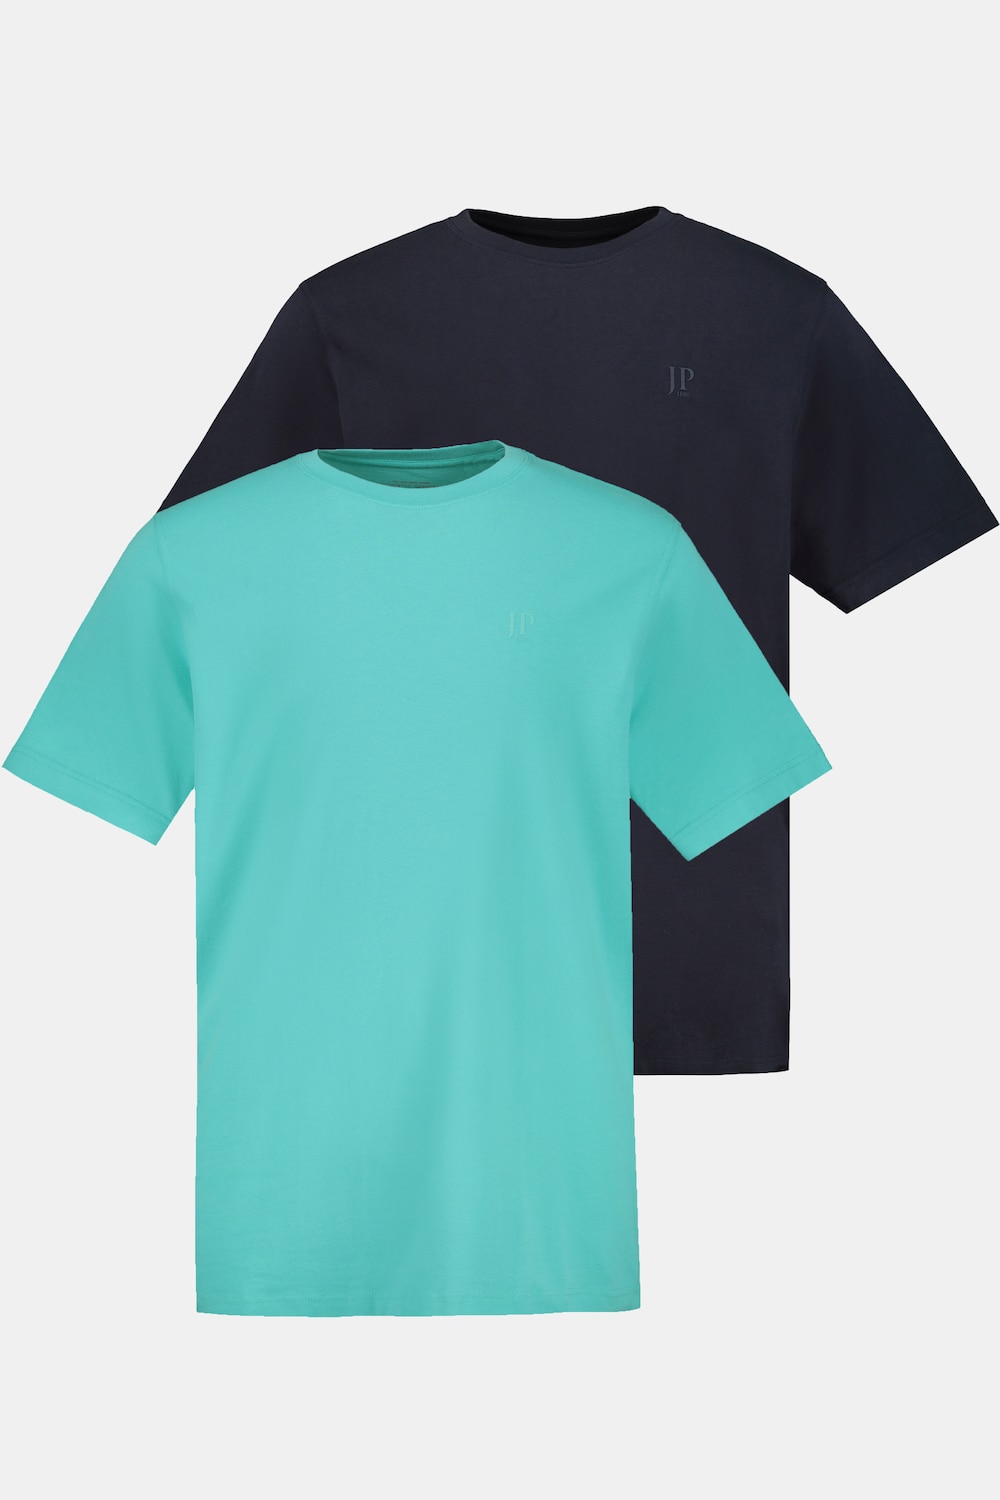 Grote Maten T-shirt, Heren, turquoise, Maat: XL, Katoen, JP1880